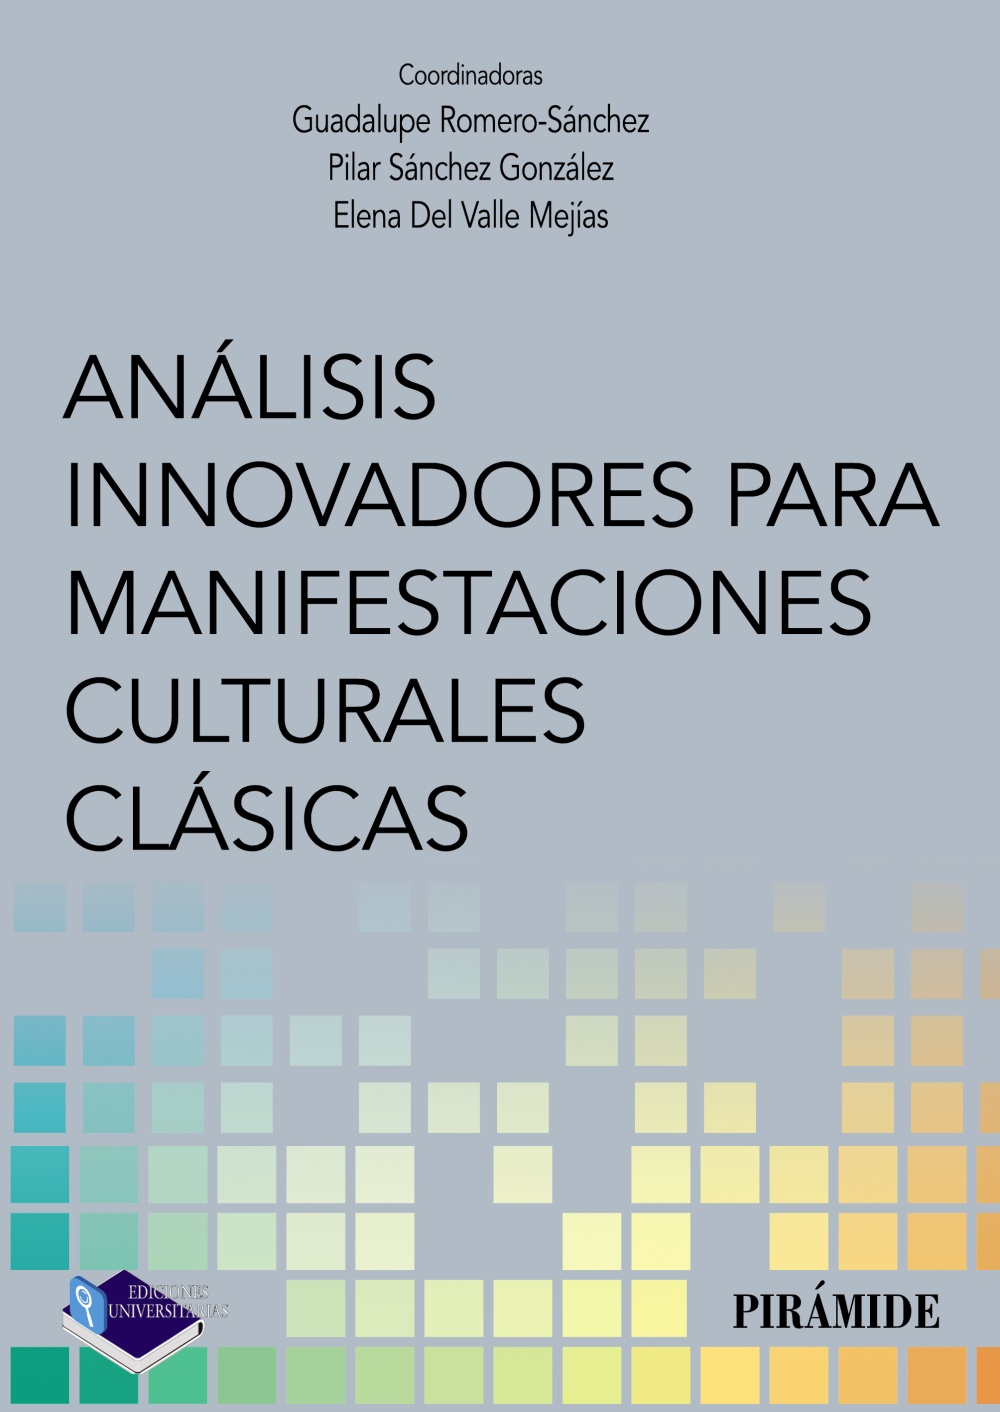 Imagen de portada del libro Análisis innovadores para manifestaciones culturales clásicas